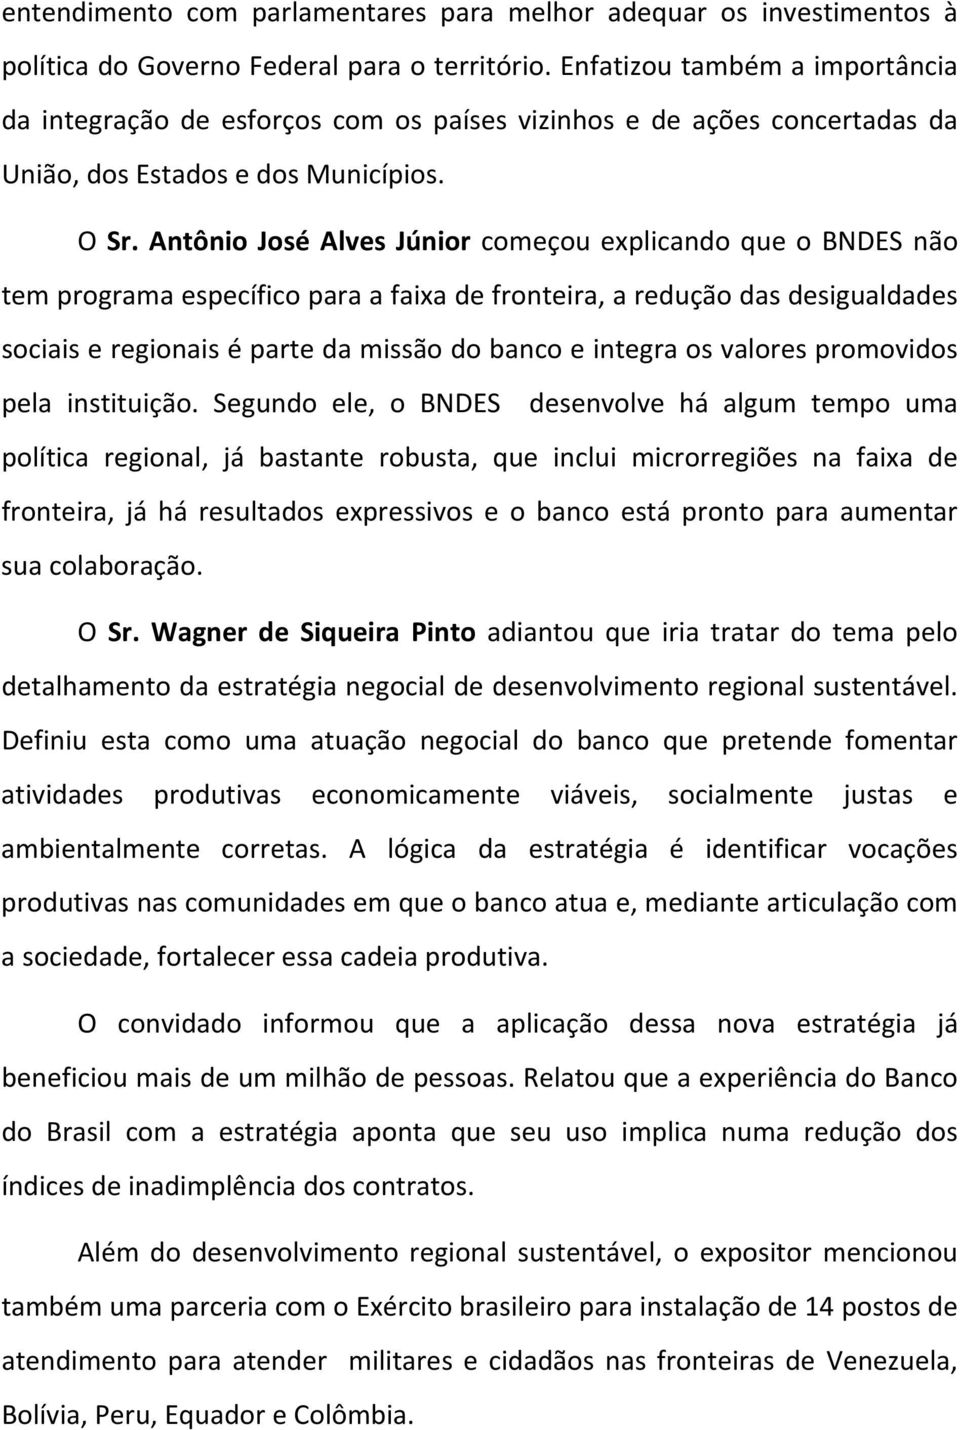 Antônio José Alves Júnior começou explicando que o BNDES não tem programa específico para a faixa de fronteira, a redução das desigualdades sociais e regionais é parte da missão do banco e integra os